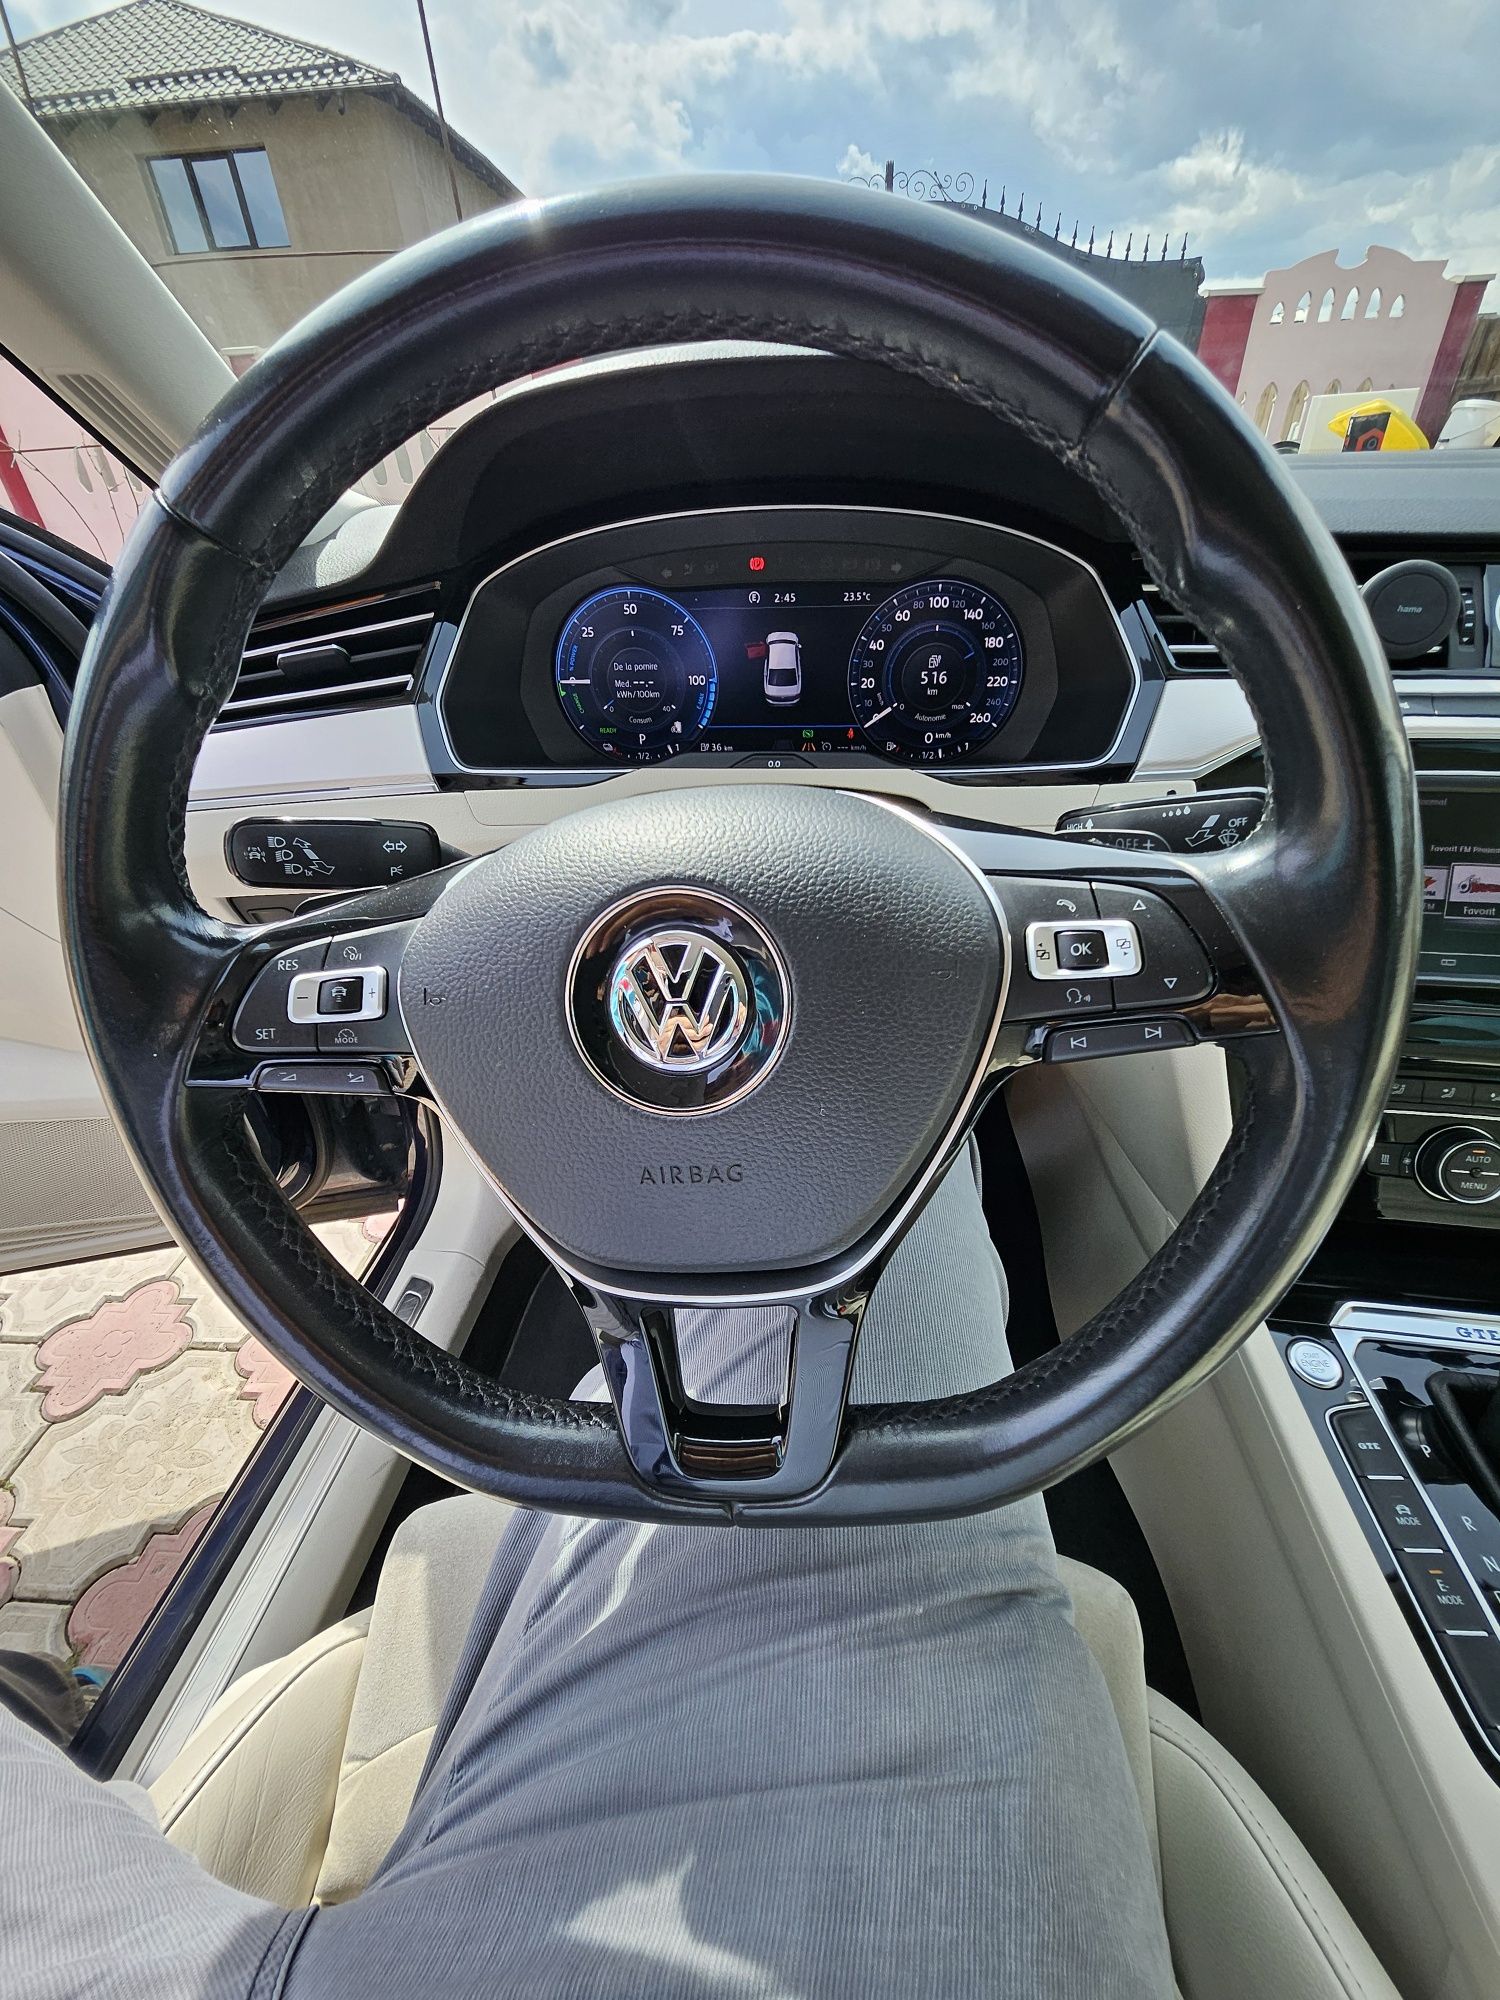 Volkswagen Passat GTE, hybrid plug-in